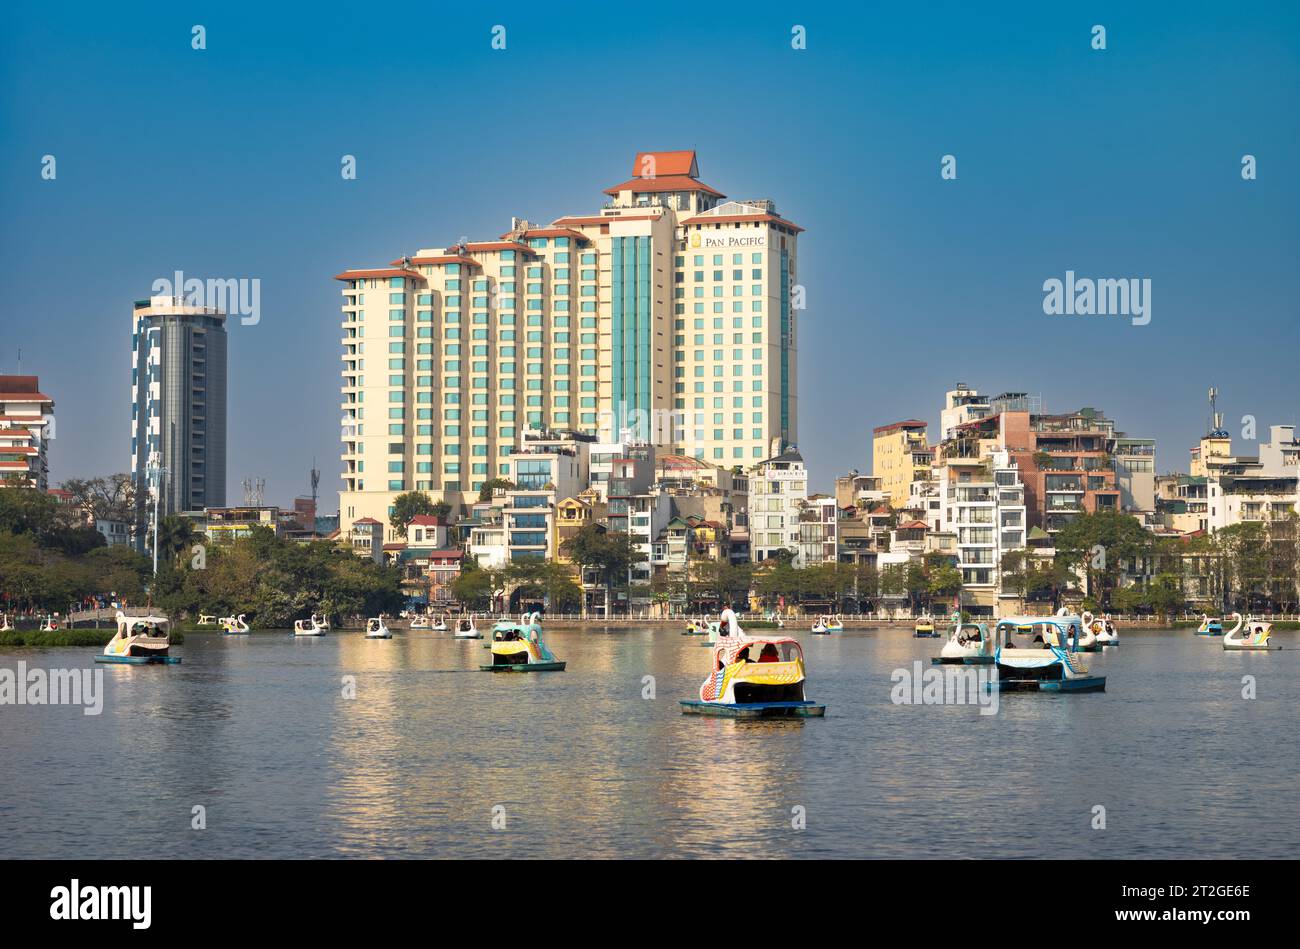 Auf dem Truc Bach Lake neben dem Pan Pacific Hotel in Hanoi, Vietnam, fahren die Menschen schwanförmige Tretboote Stockfoto